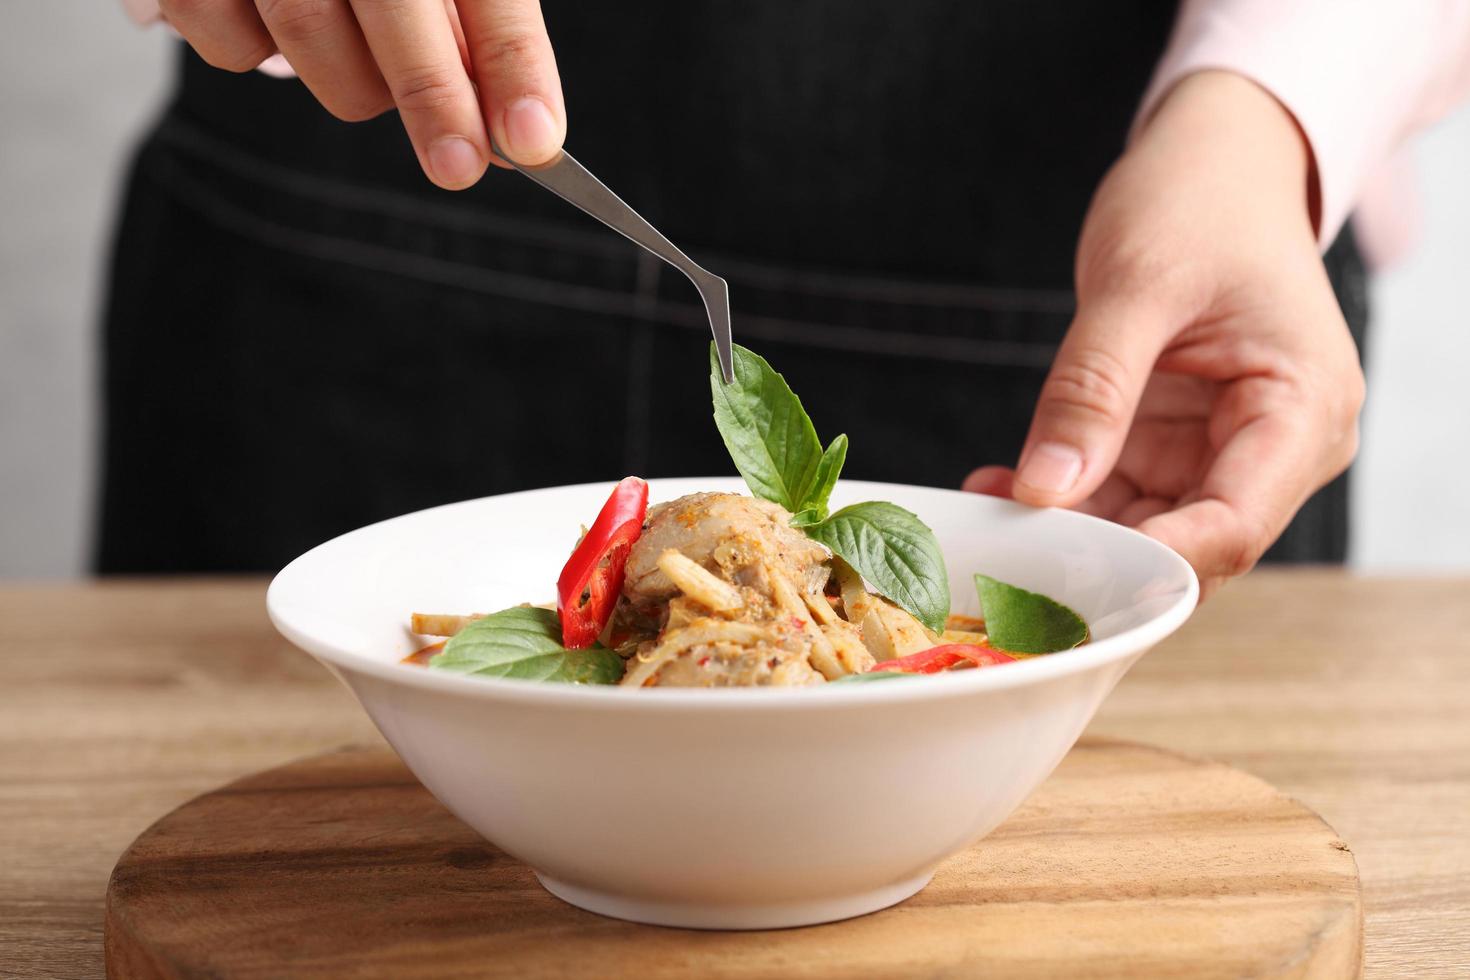 El estilista de alimentos usa pinzas para decorar la comida tailandesa en un plato blanco foto